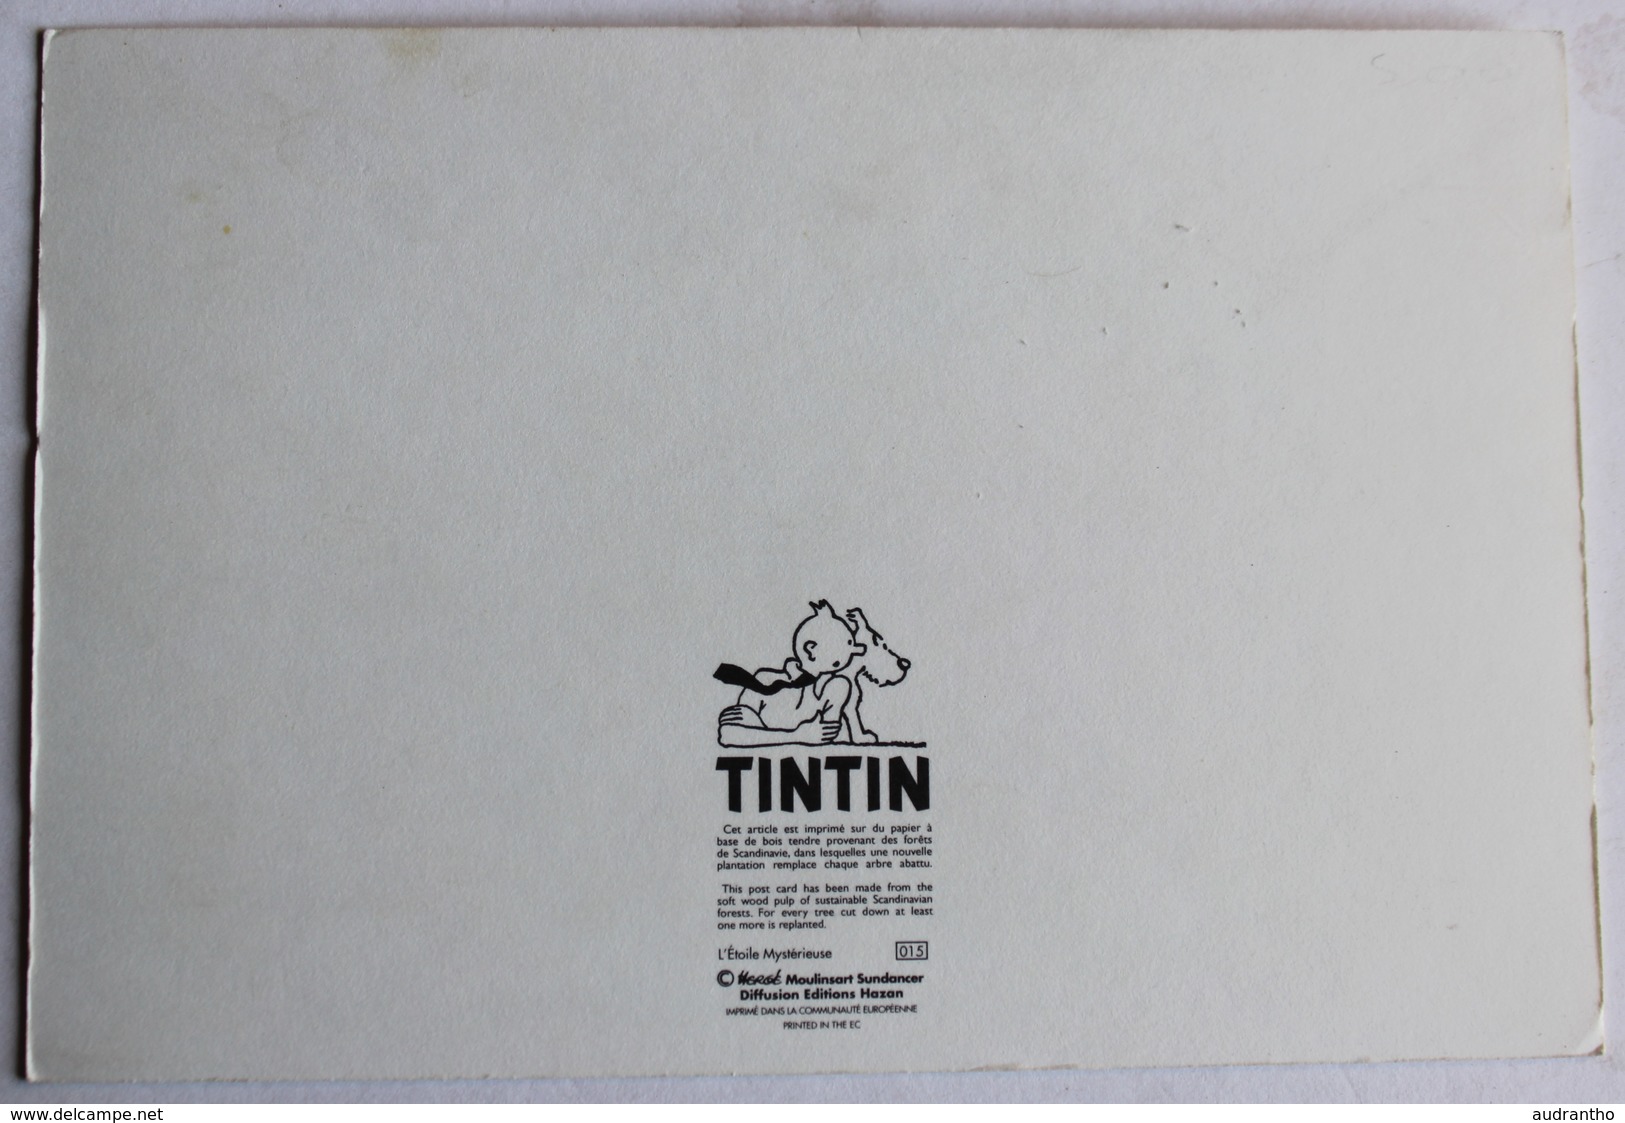 Carte Postale Tintin Et Milou L'étoile Mystérieuse Moulinsart Sundancer éditions Hazan - Bandes Dessinées